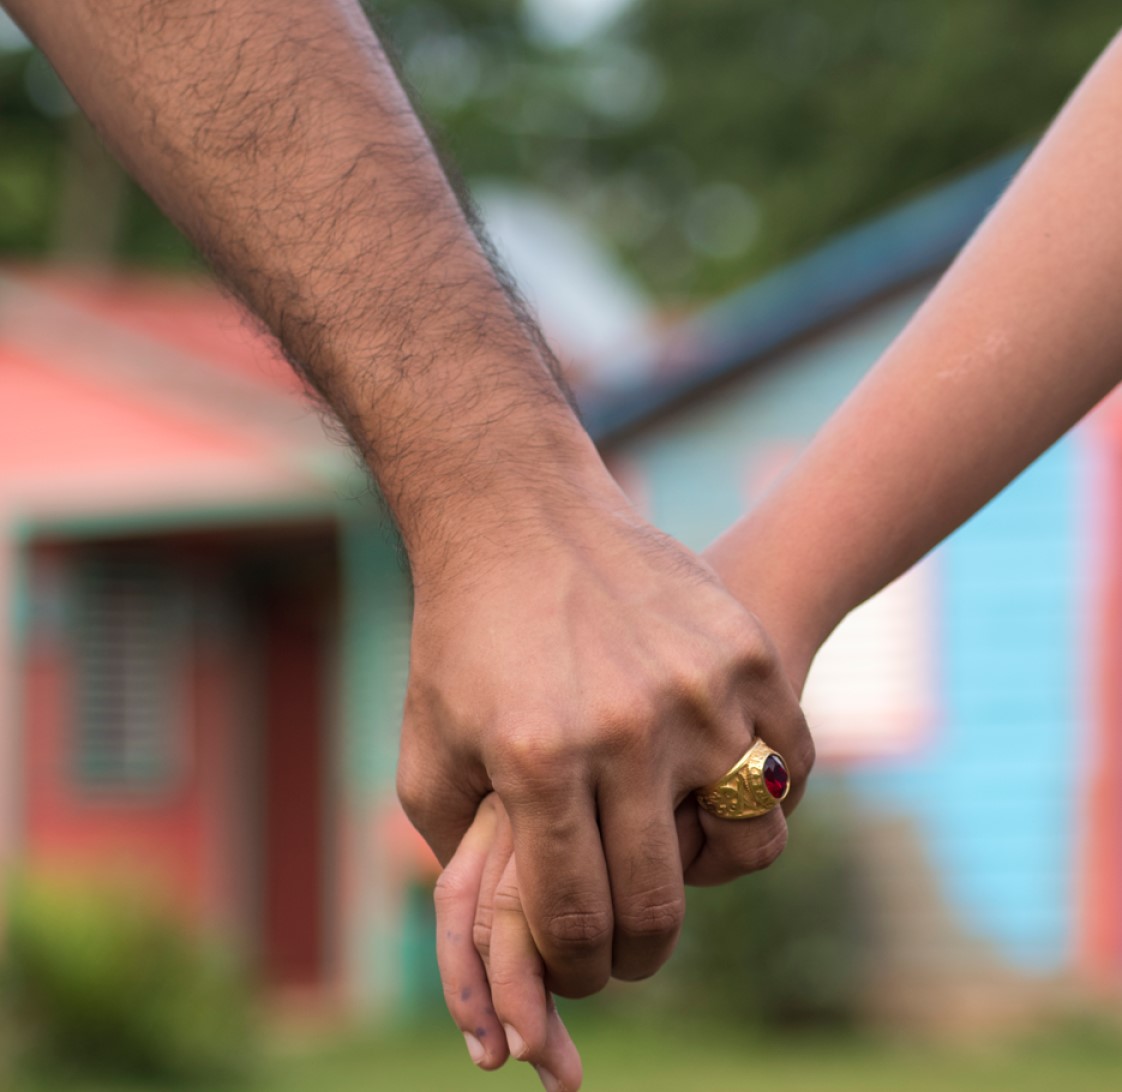 PROBLEMA. Según Unicef, el matrimonio infantil es considerado una grave violencia de género.